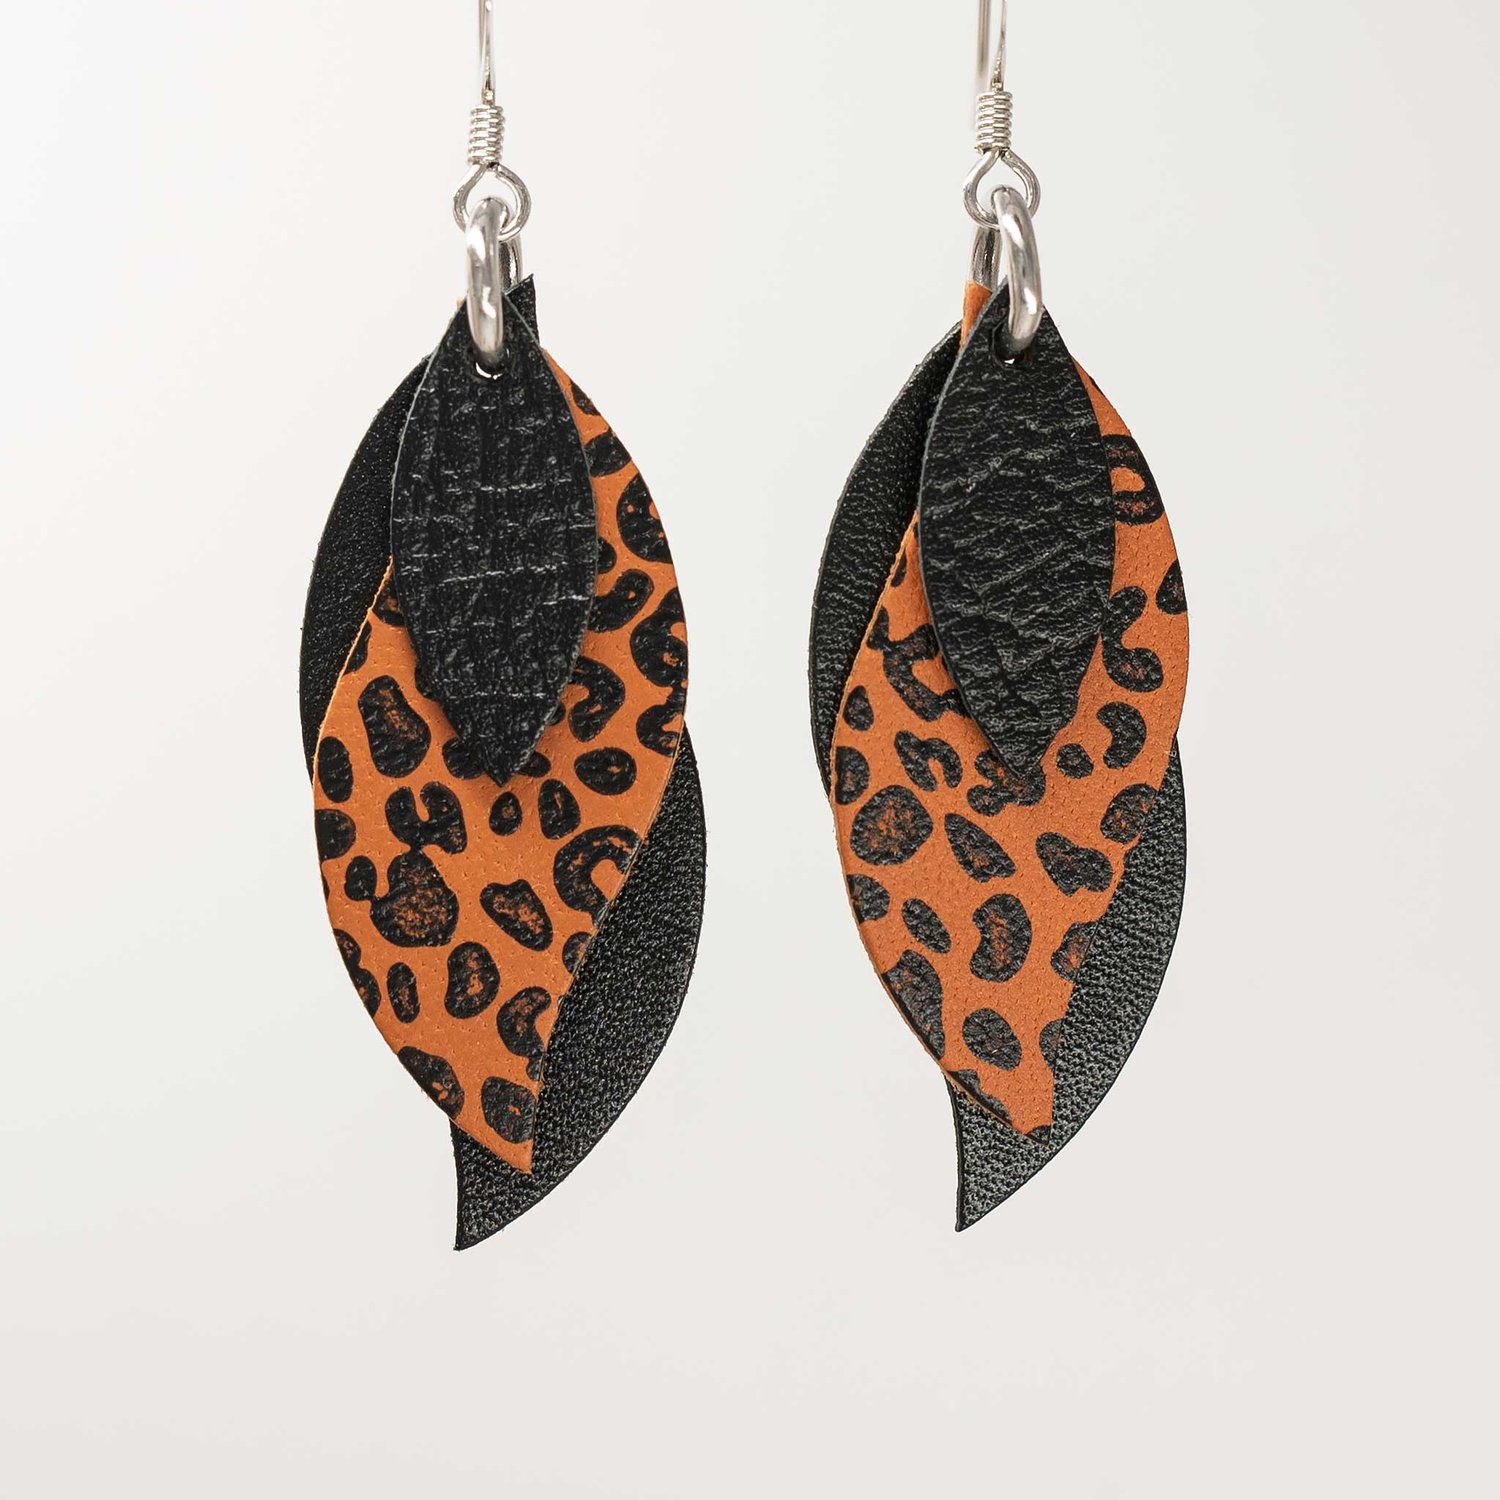 Image of Handmade Australian leather leaf earrings - Black with black leopard on saddle tan [LLT-509]